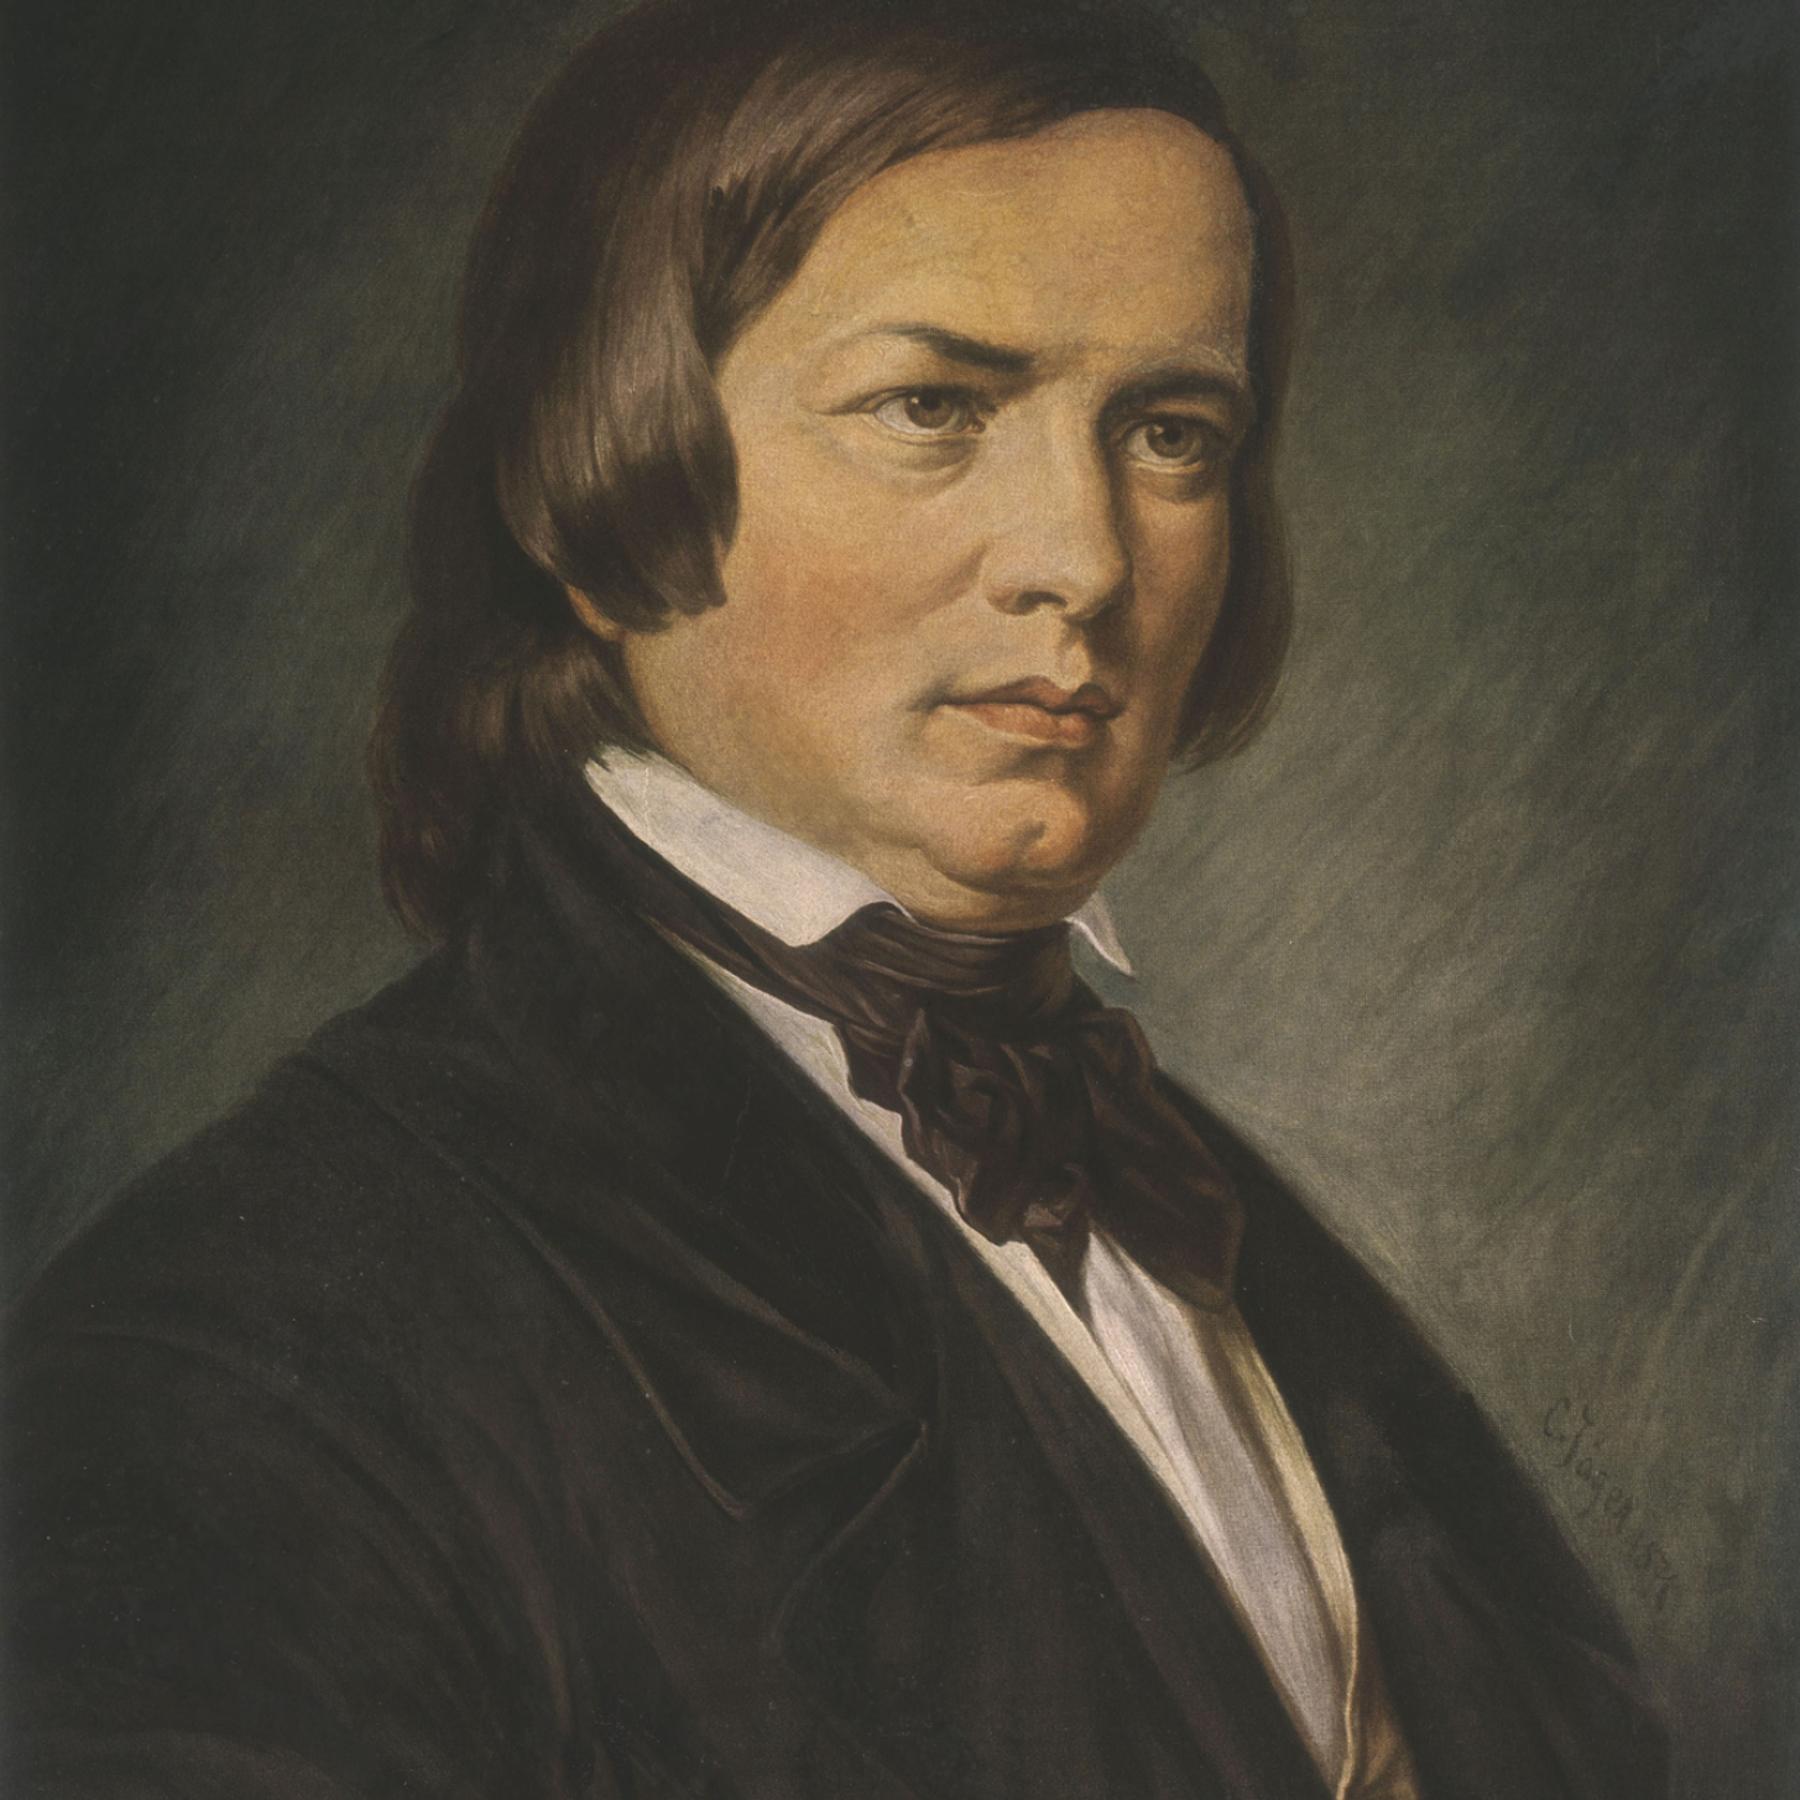 Robert Schumann - "Waldszenen"